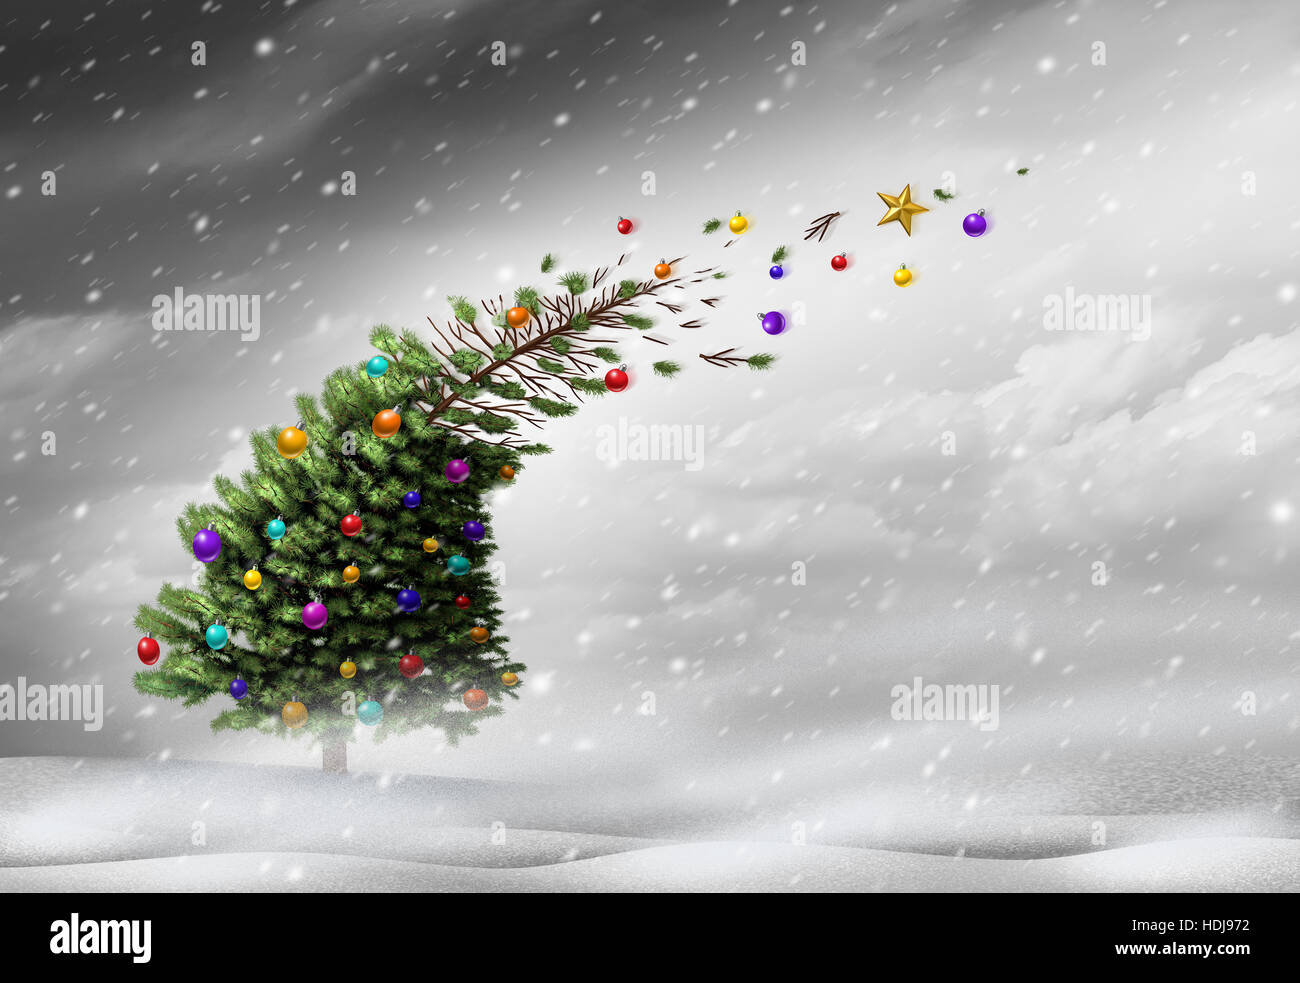 Concetto di vacanza di Natale lo stress o l inverno blizzard tempesta come un albero di natale ottenendo saltato lontano da forti condizioni meteorologiche estreme si snoda con ornamenti di volare Foto Stock